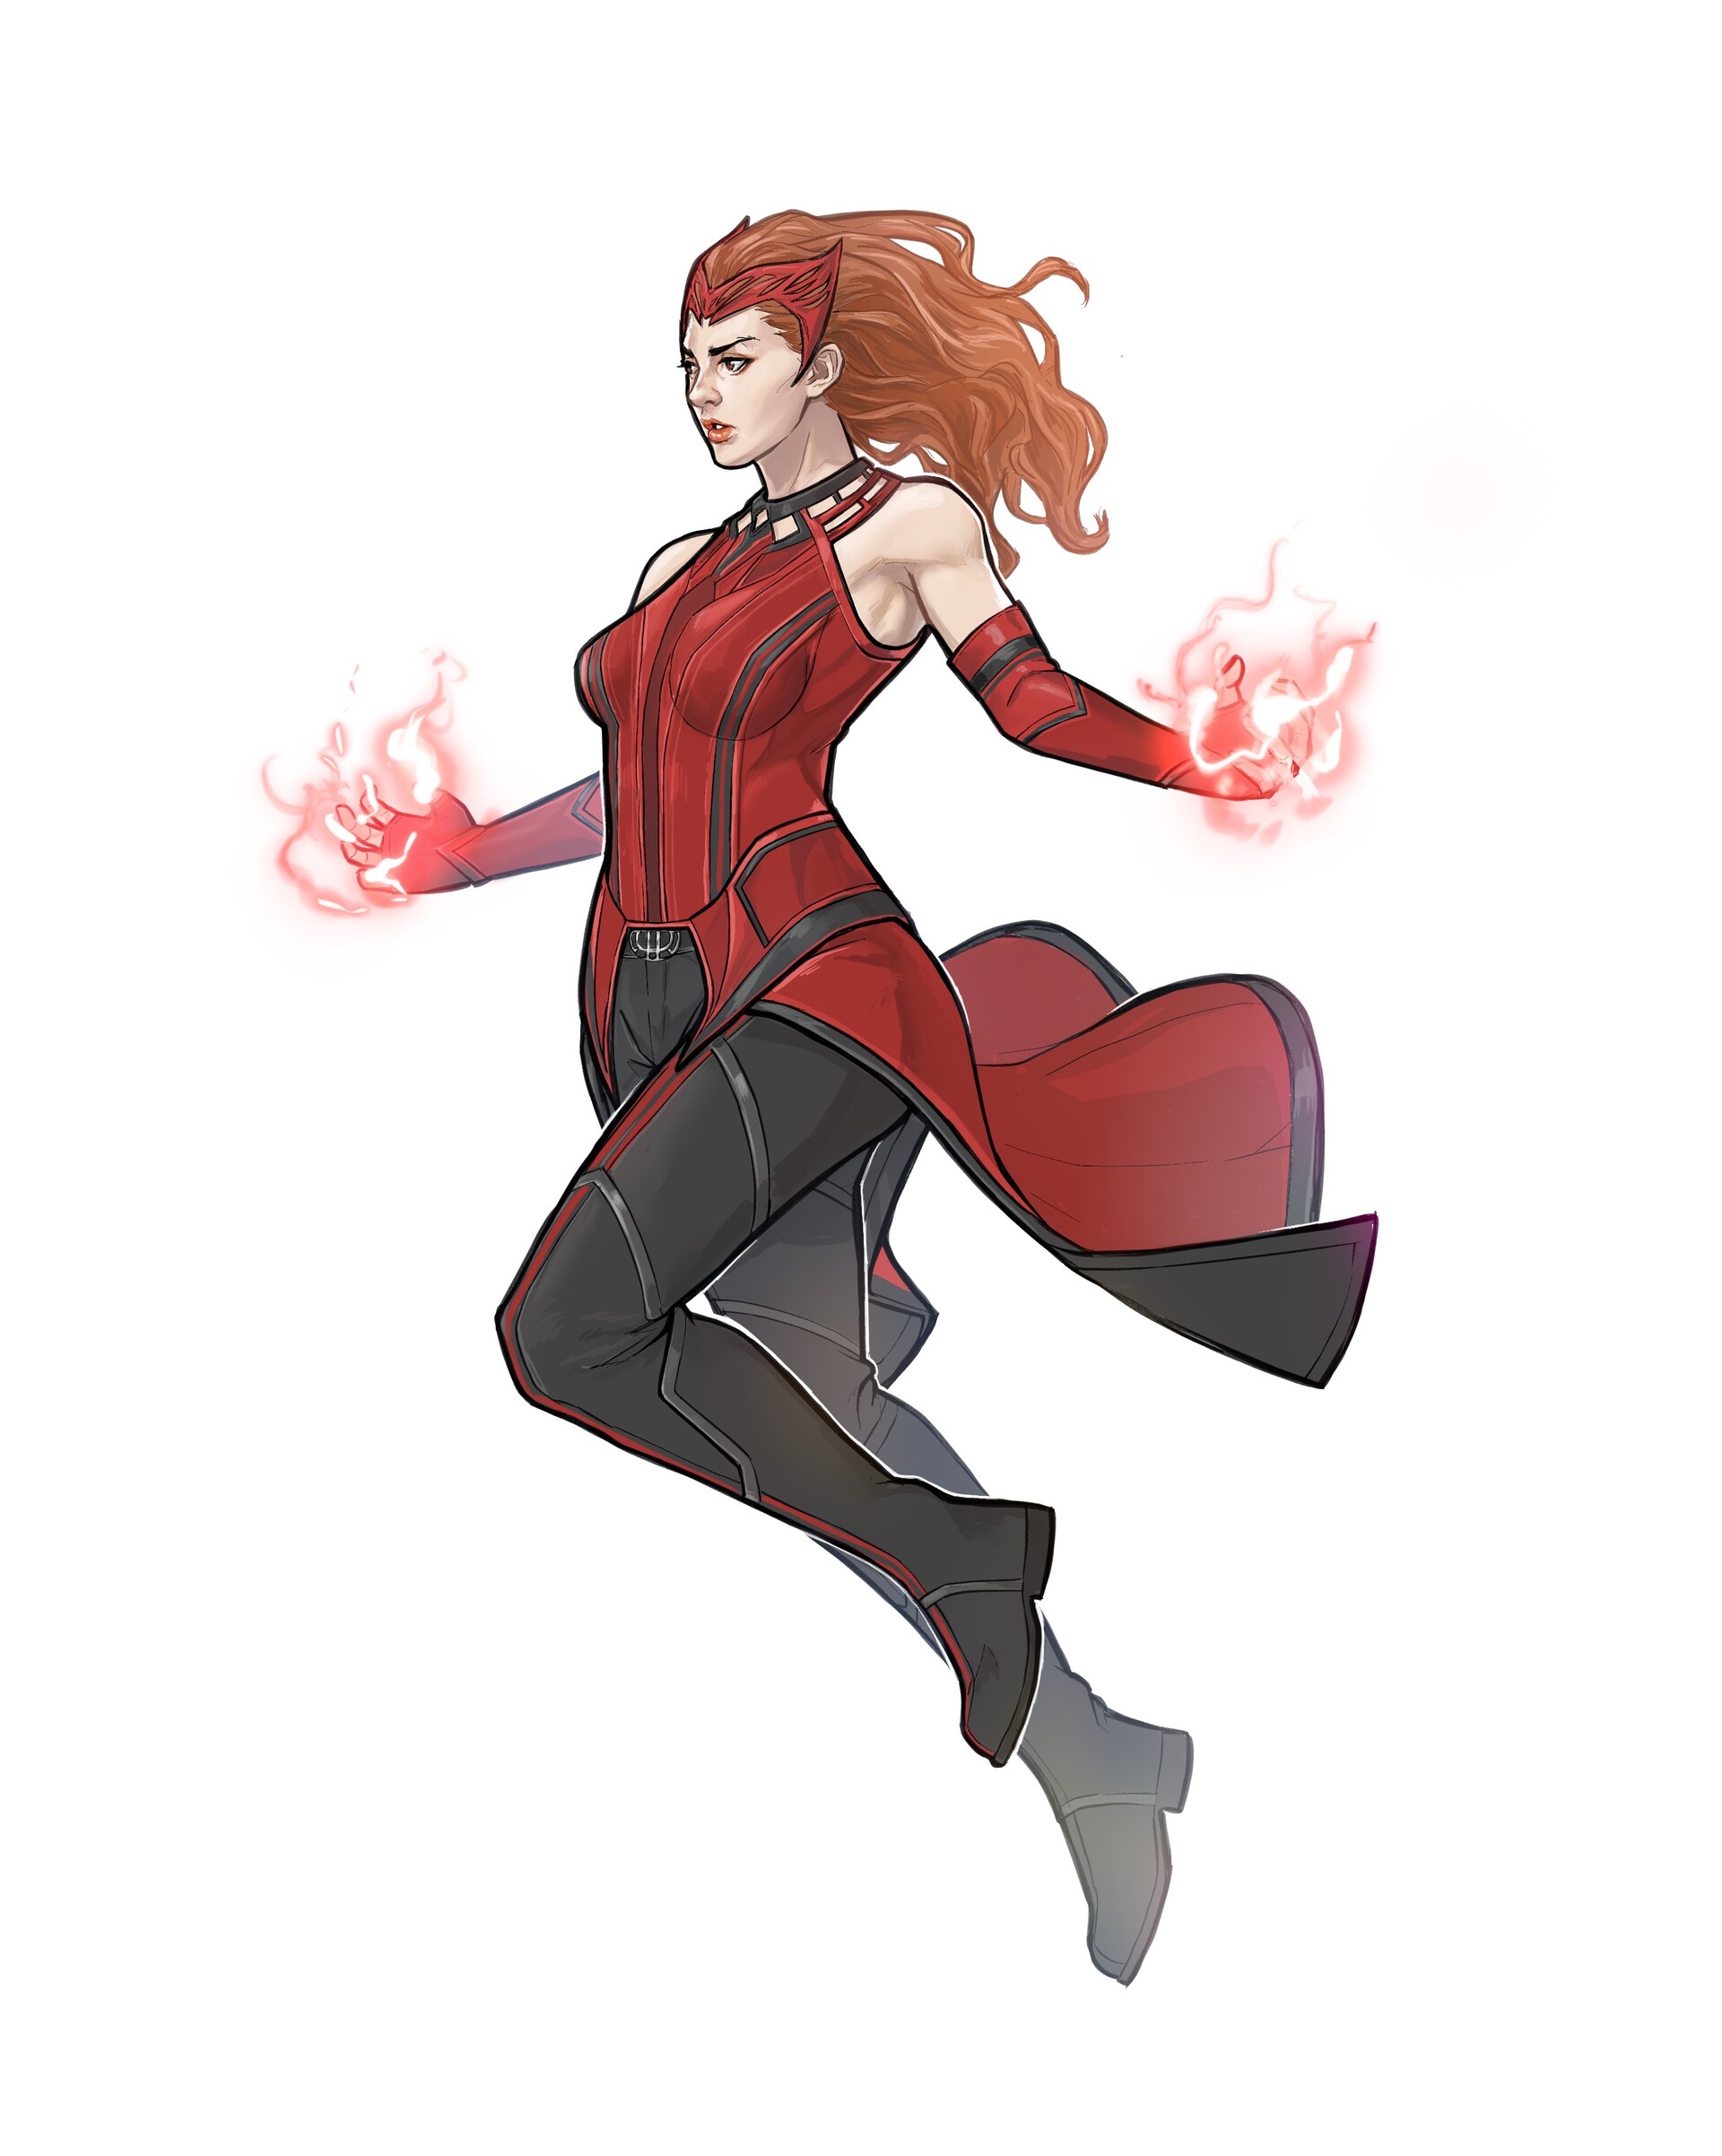 Scarlet witch, fahmi asyari.